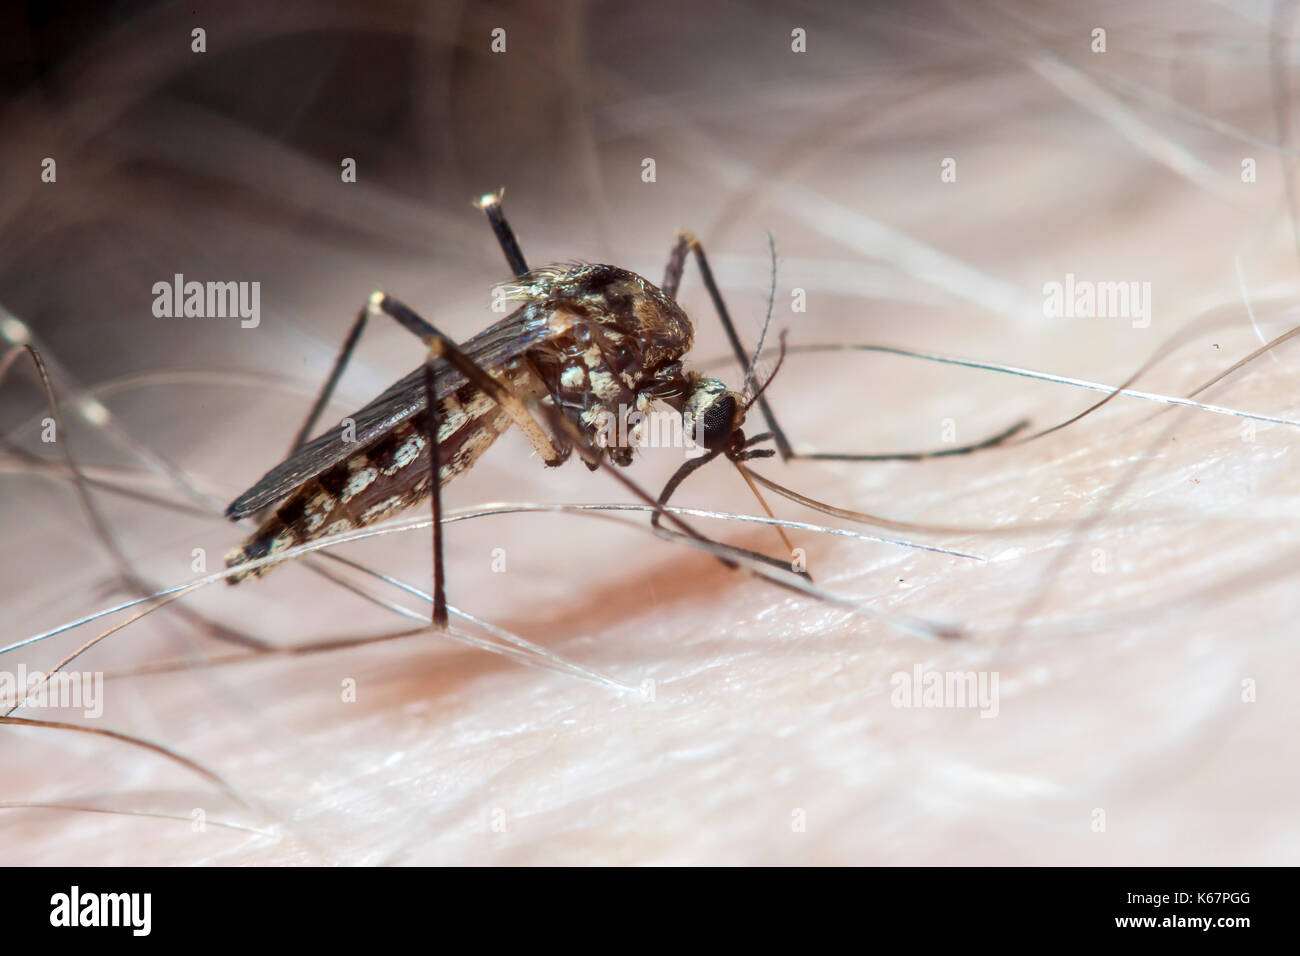 aedes aegypti mosquito on human skin Stock Photo